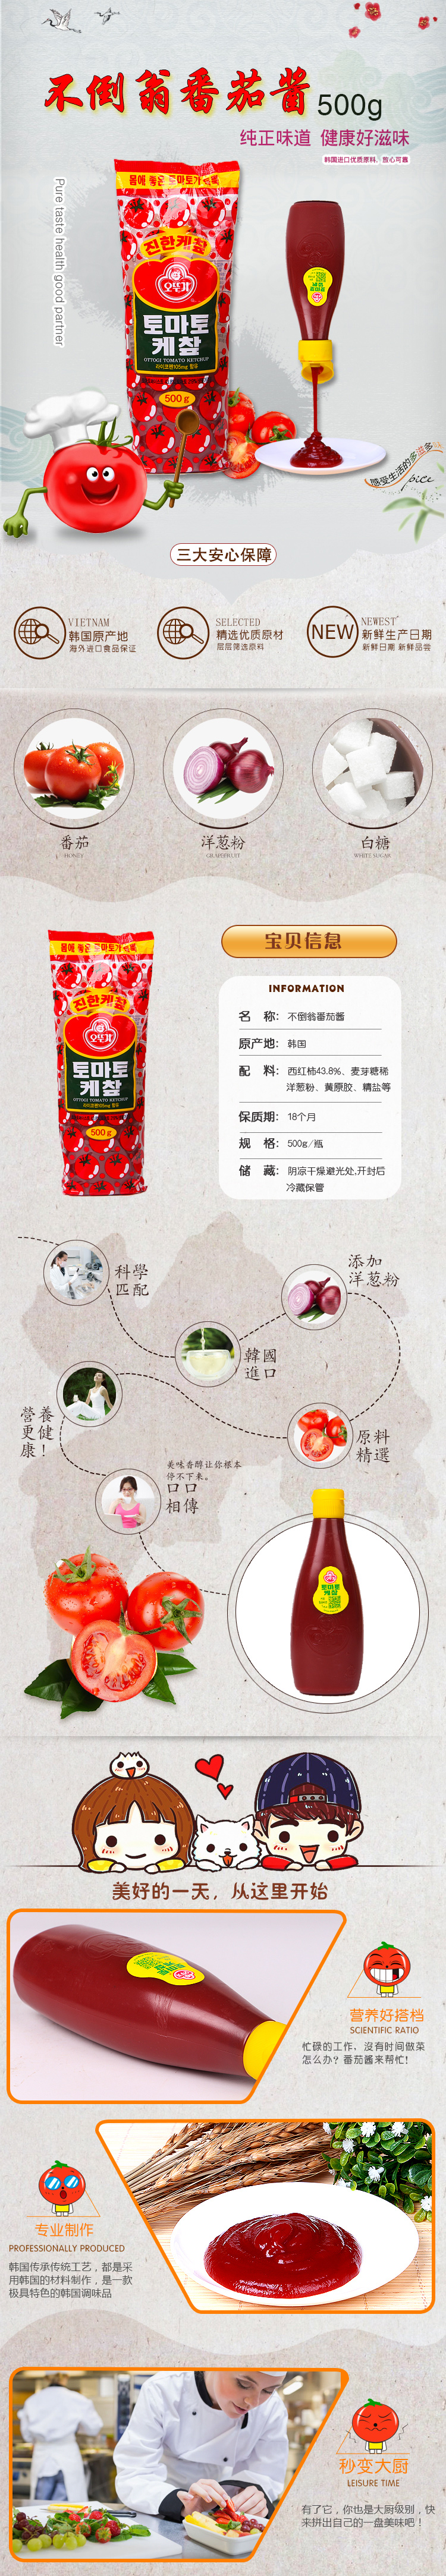 韩国进口番茄酱不倒翁奥士基番茄酱300g/500g 番茄沙司调料汁薯条伴侣